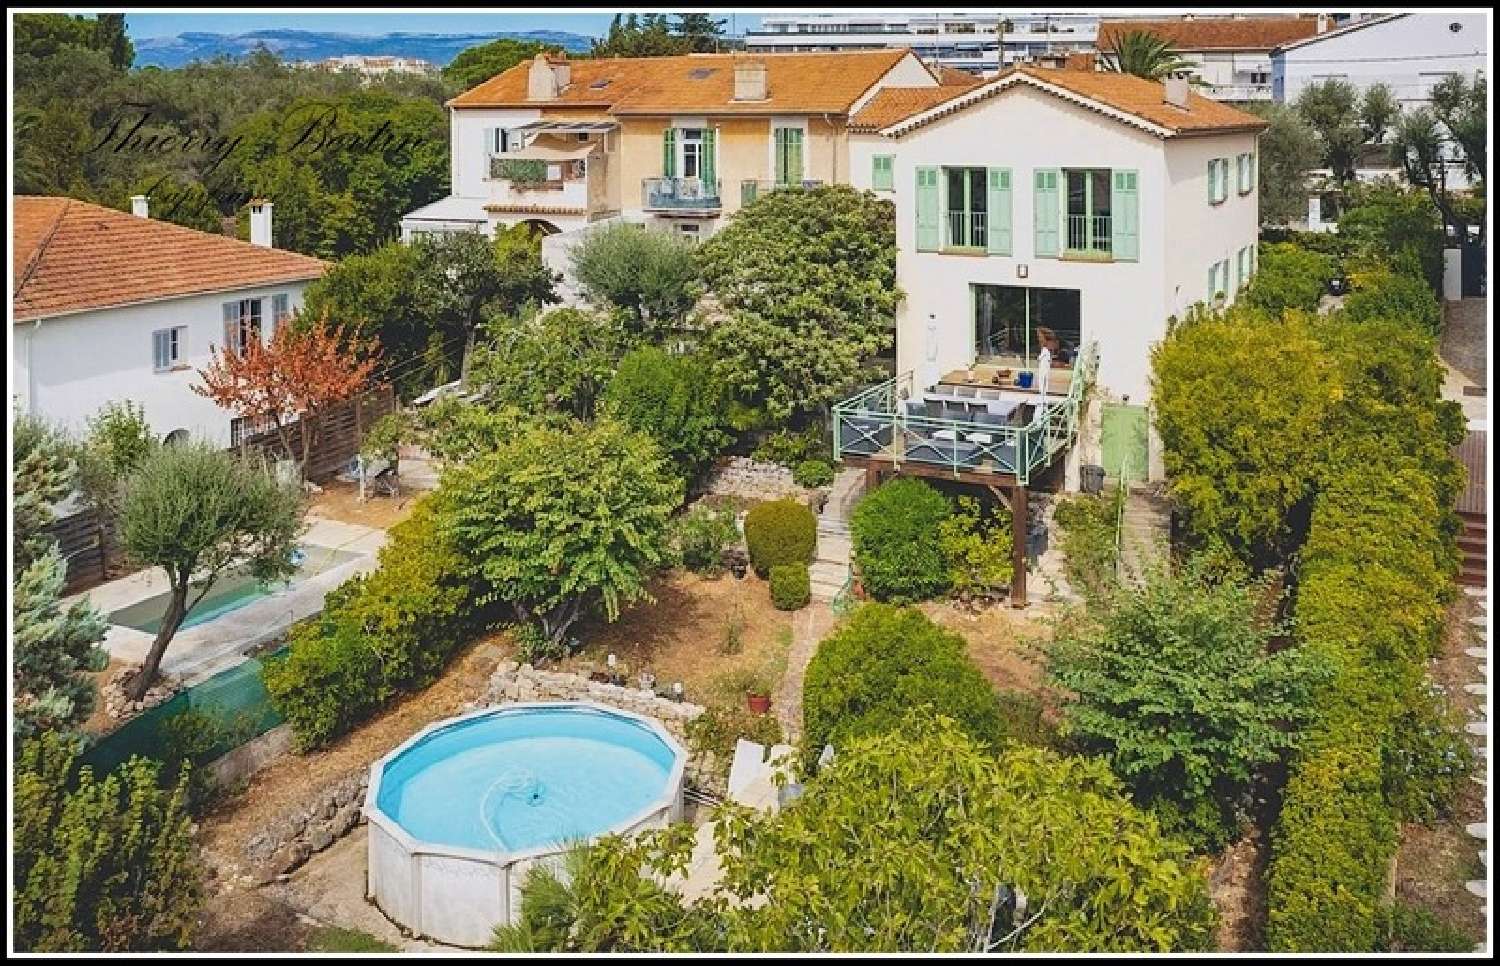  à vendre maison bourgeoise Cannes Alpes-Maritimes 1